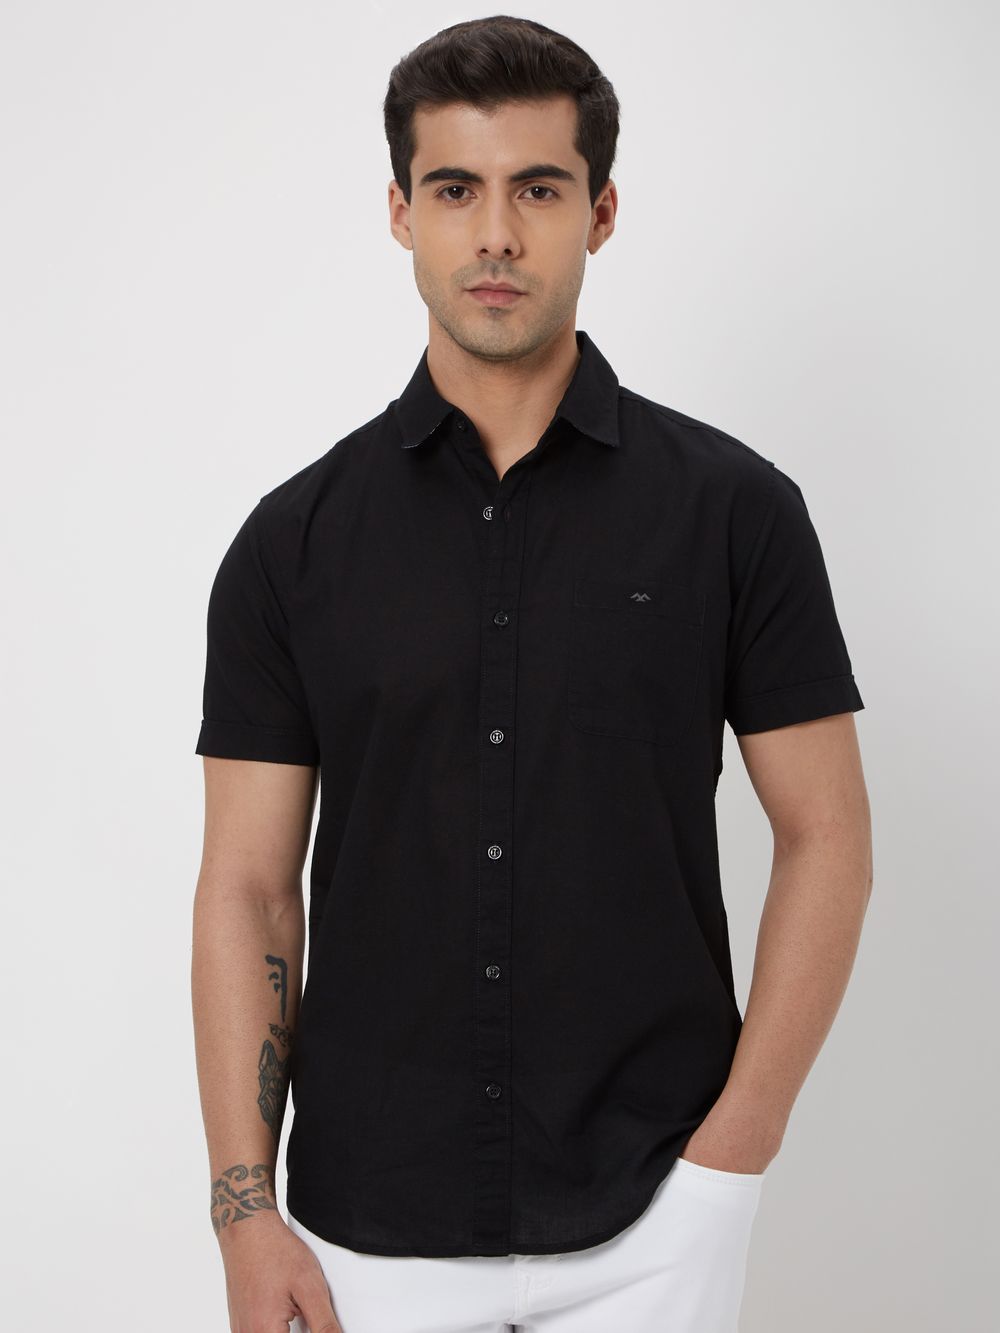 Black Cotton Linen Plain Shirt